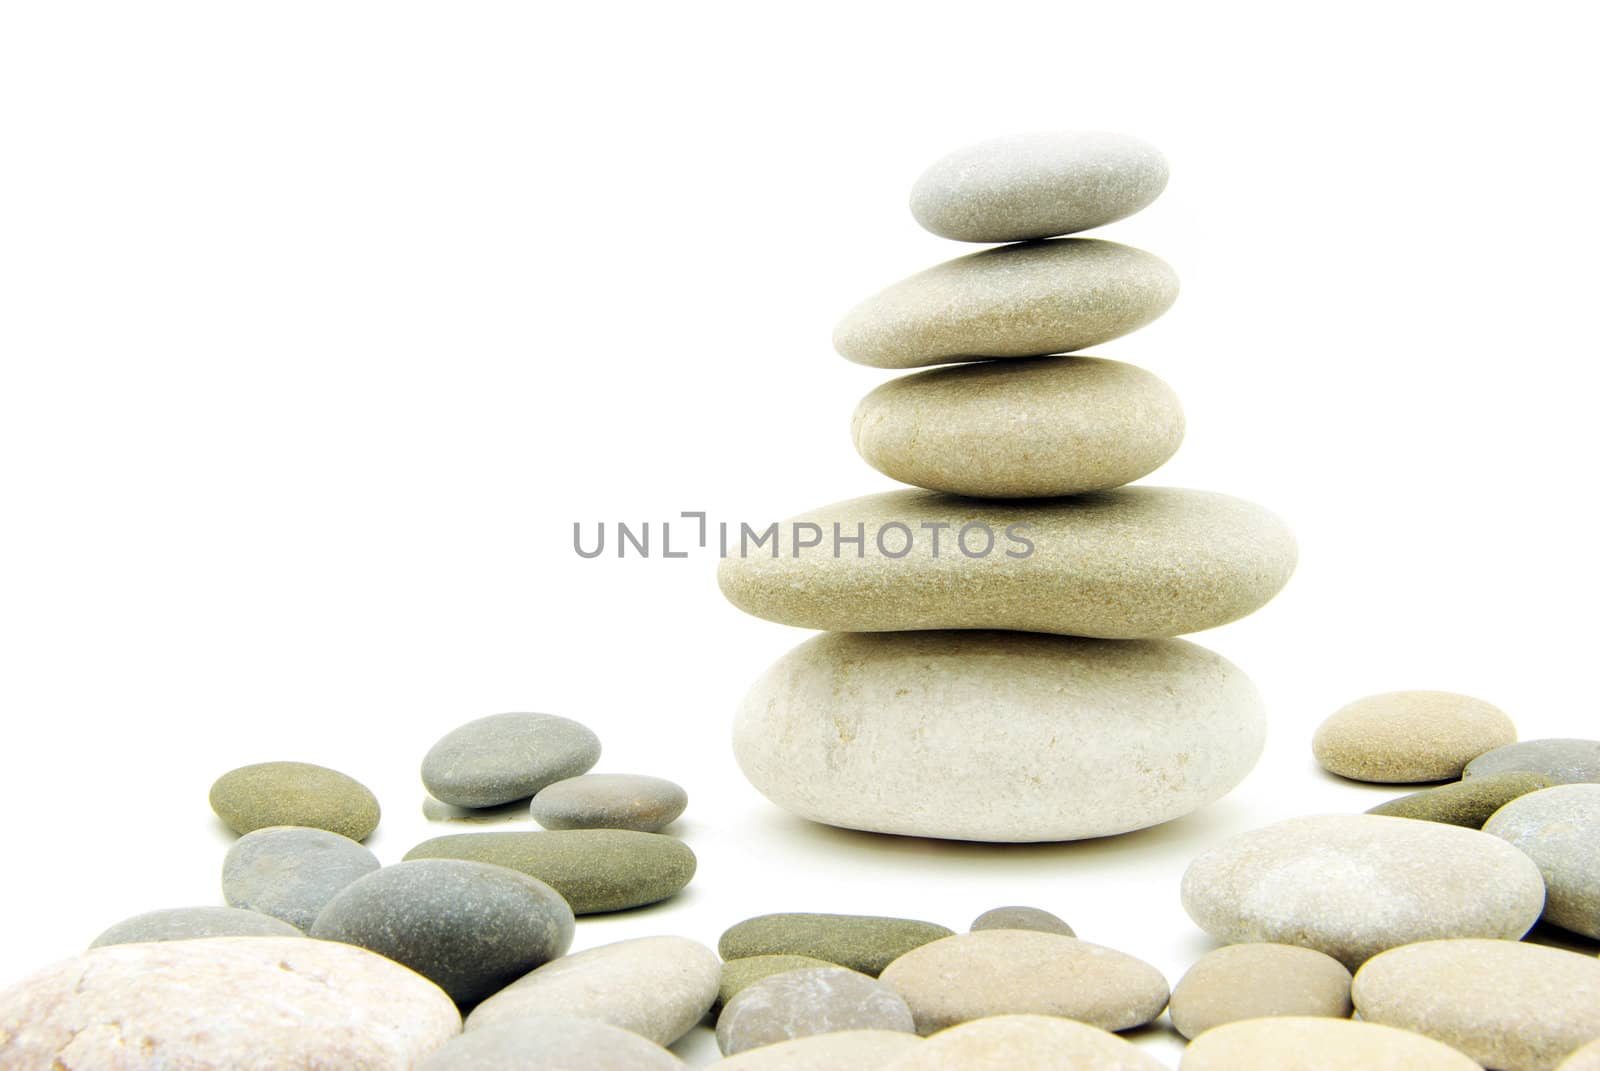  balanced stones by Pakhnyushchyy